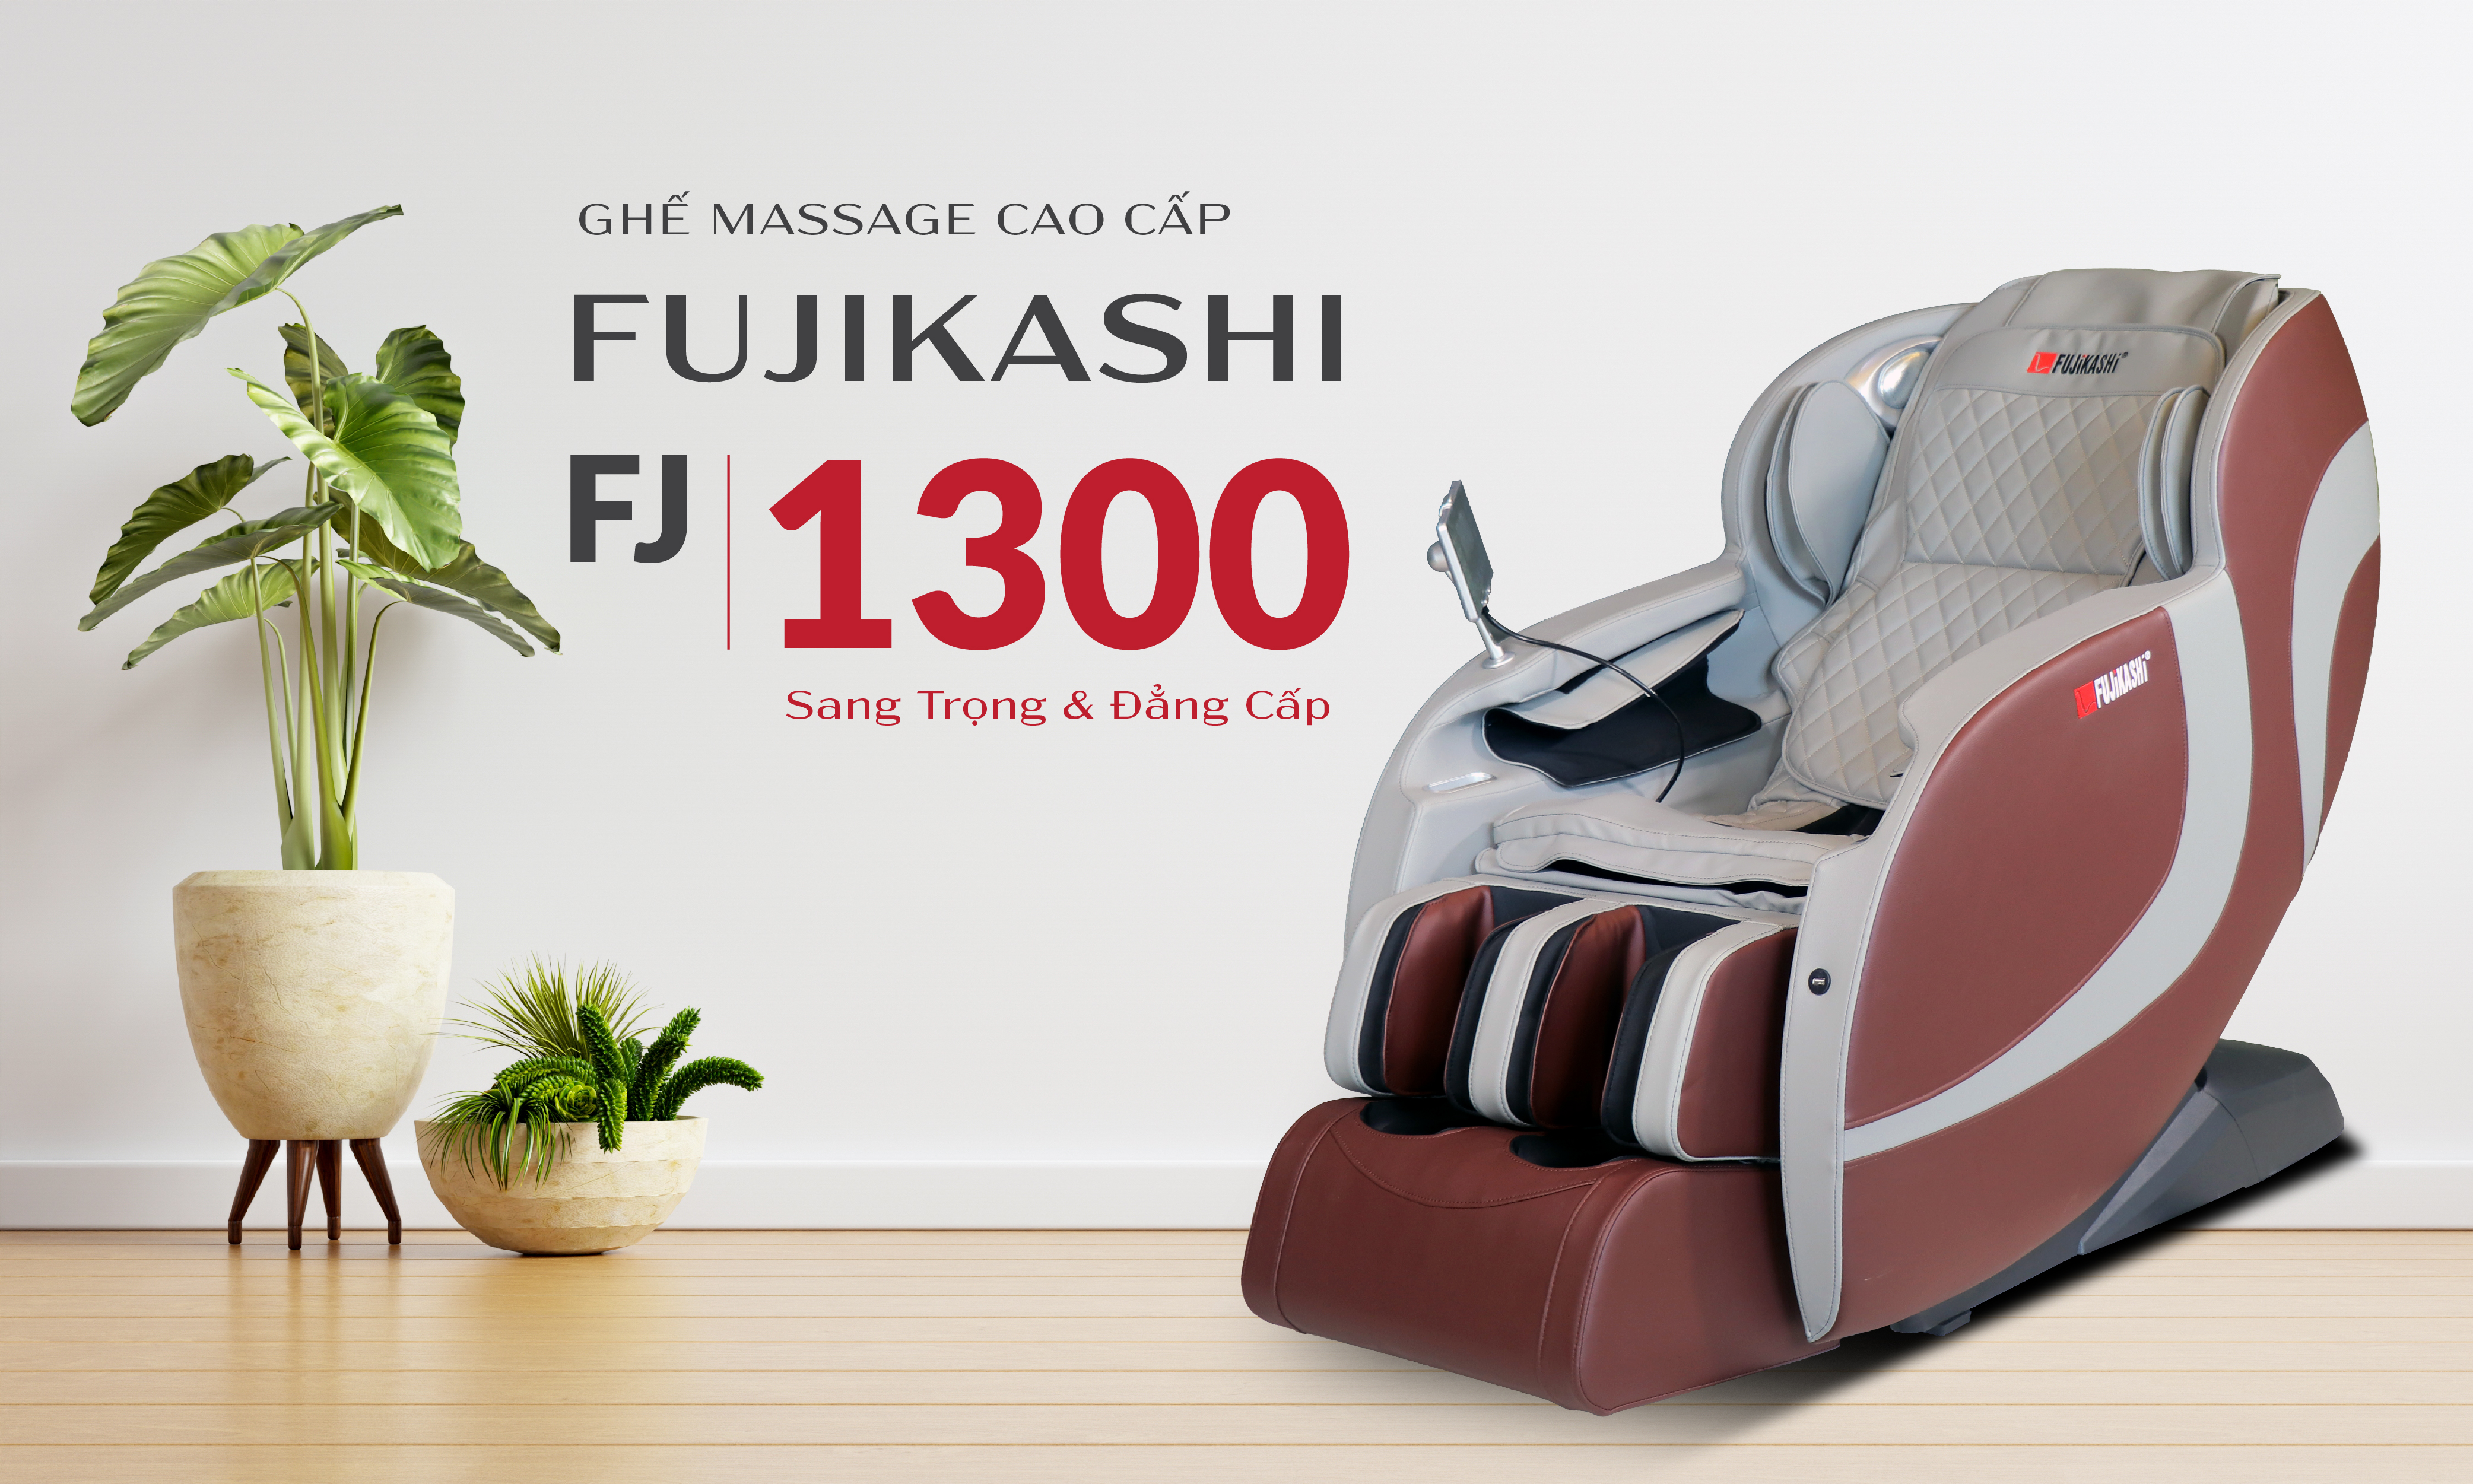 Ghế massage Fujikashi FJ-1300 sang trọng mà đẳng cấp